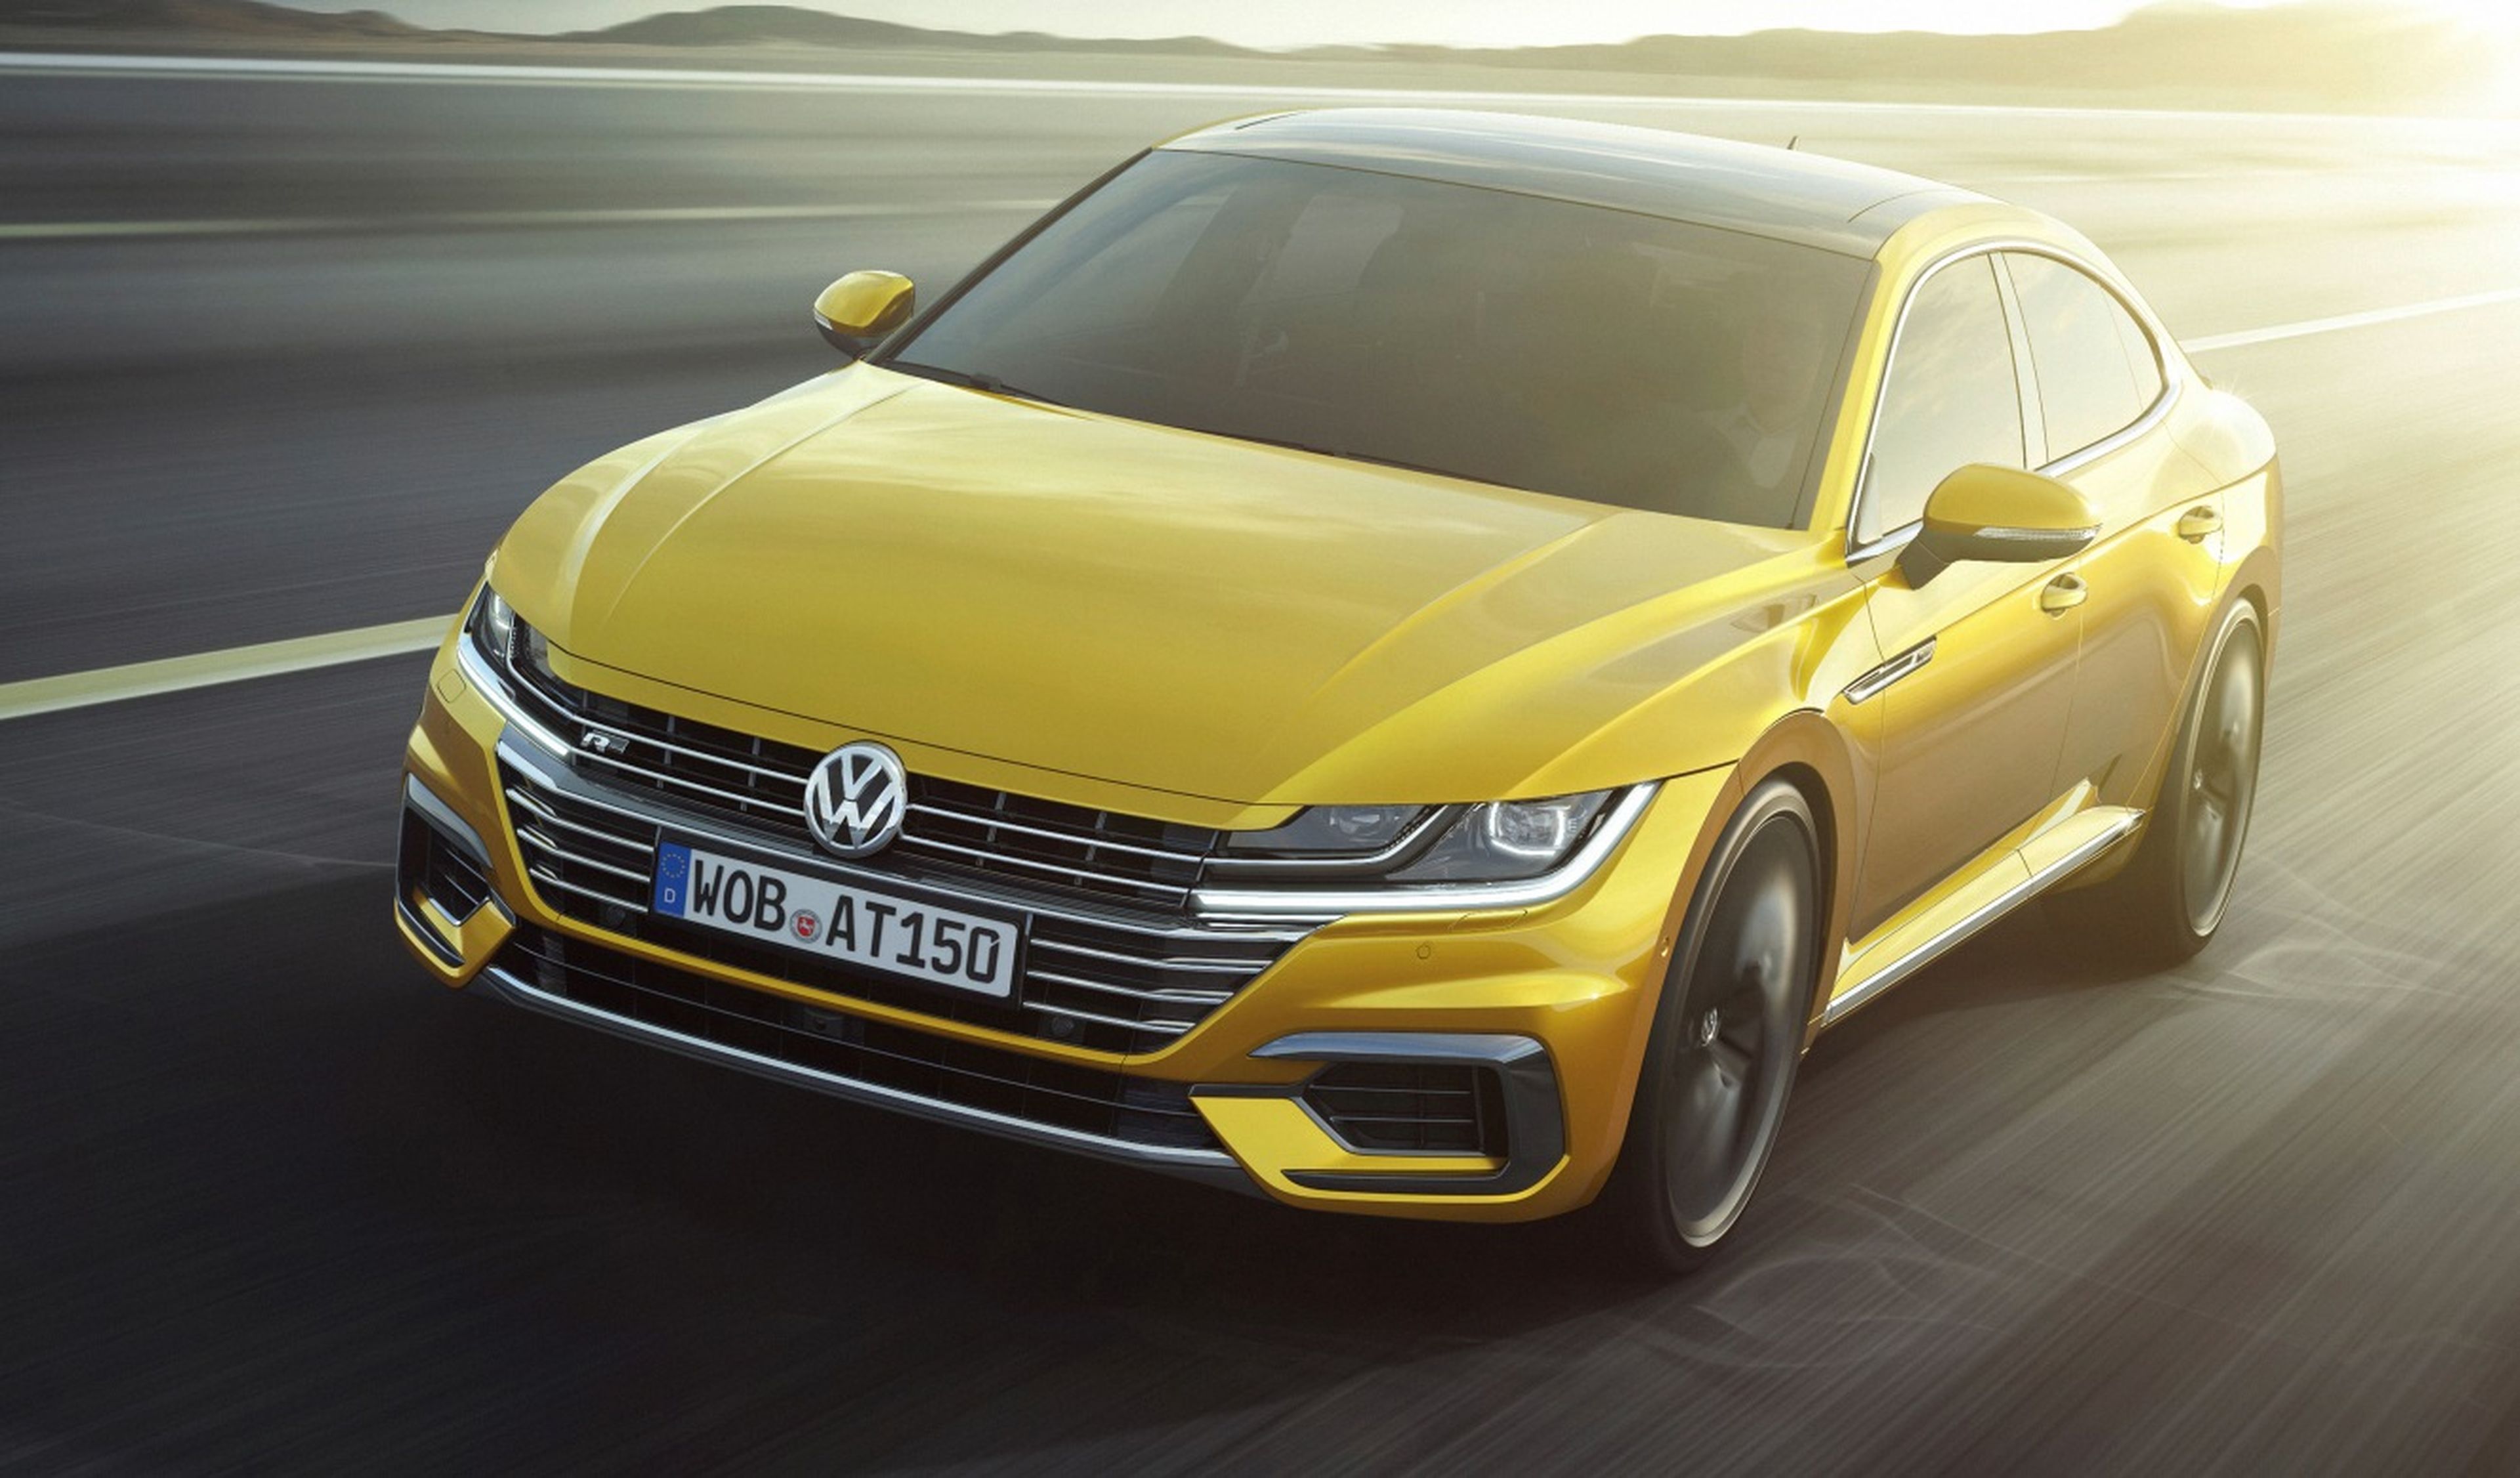 Precios del Volkswagen Arteon 2017: desde 41.790 euros